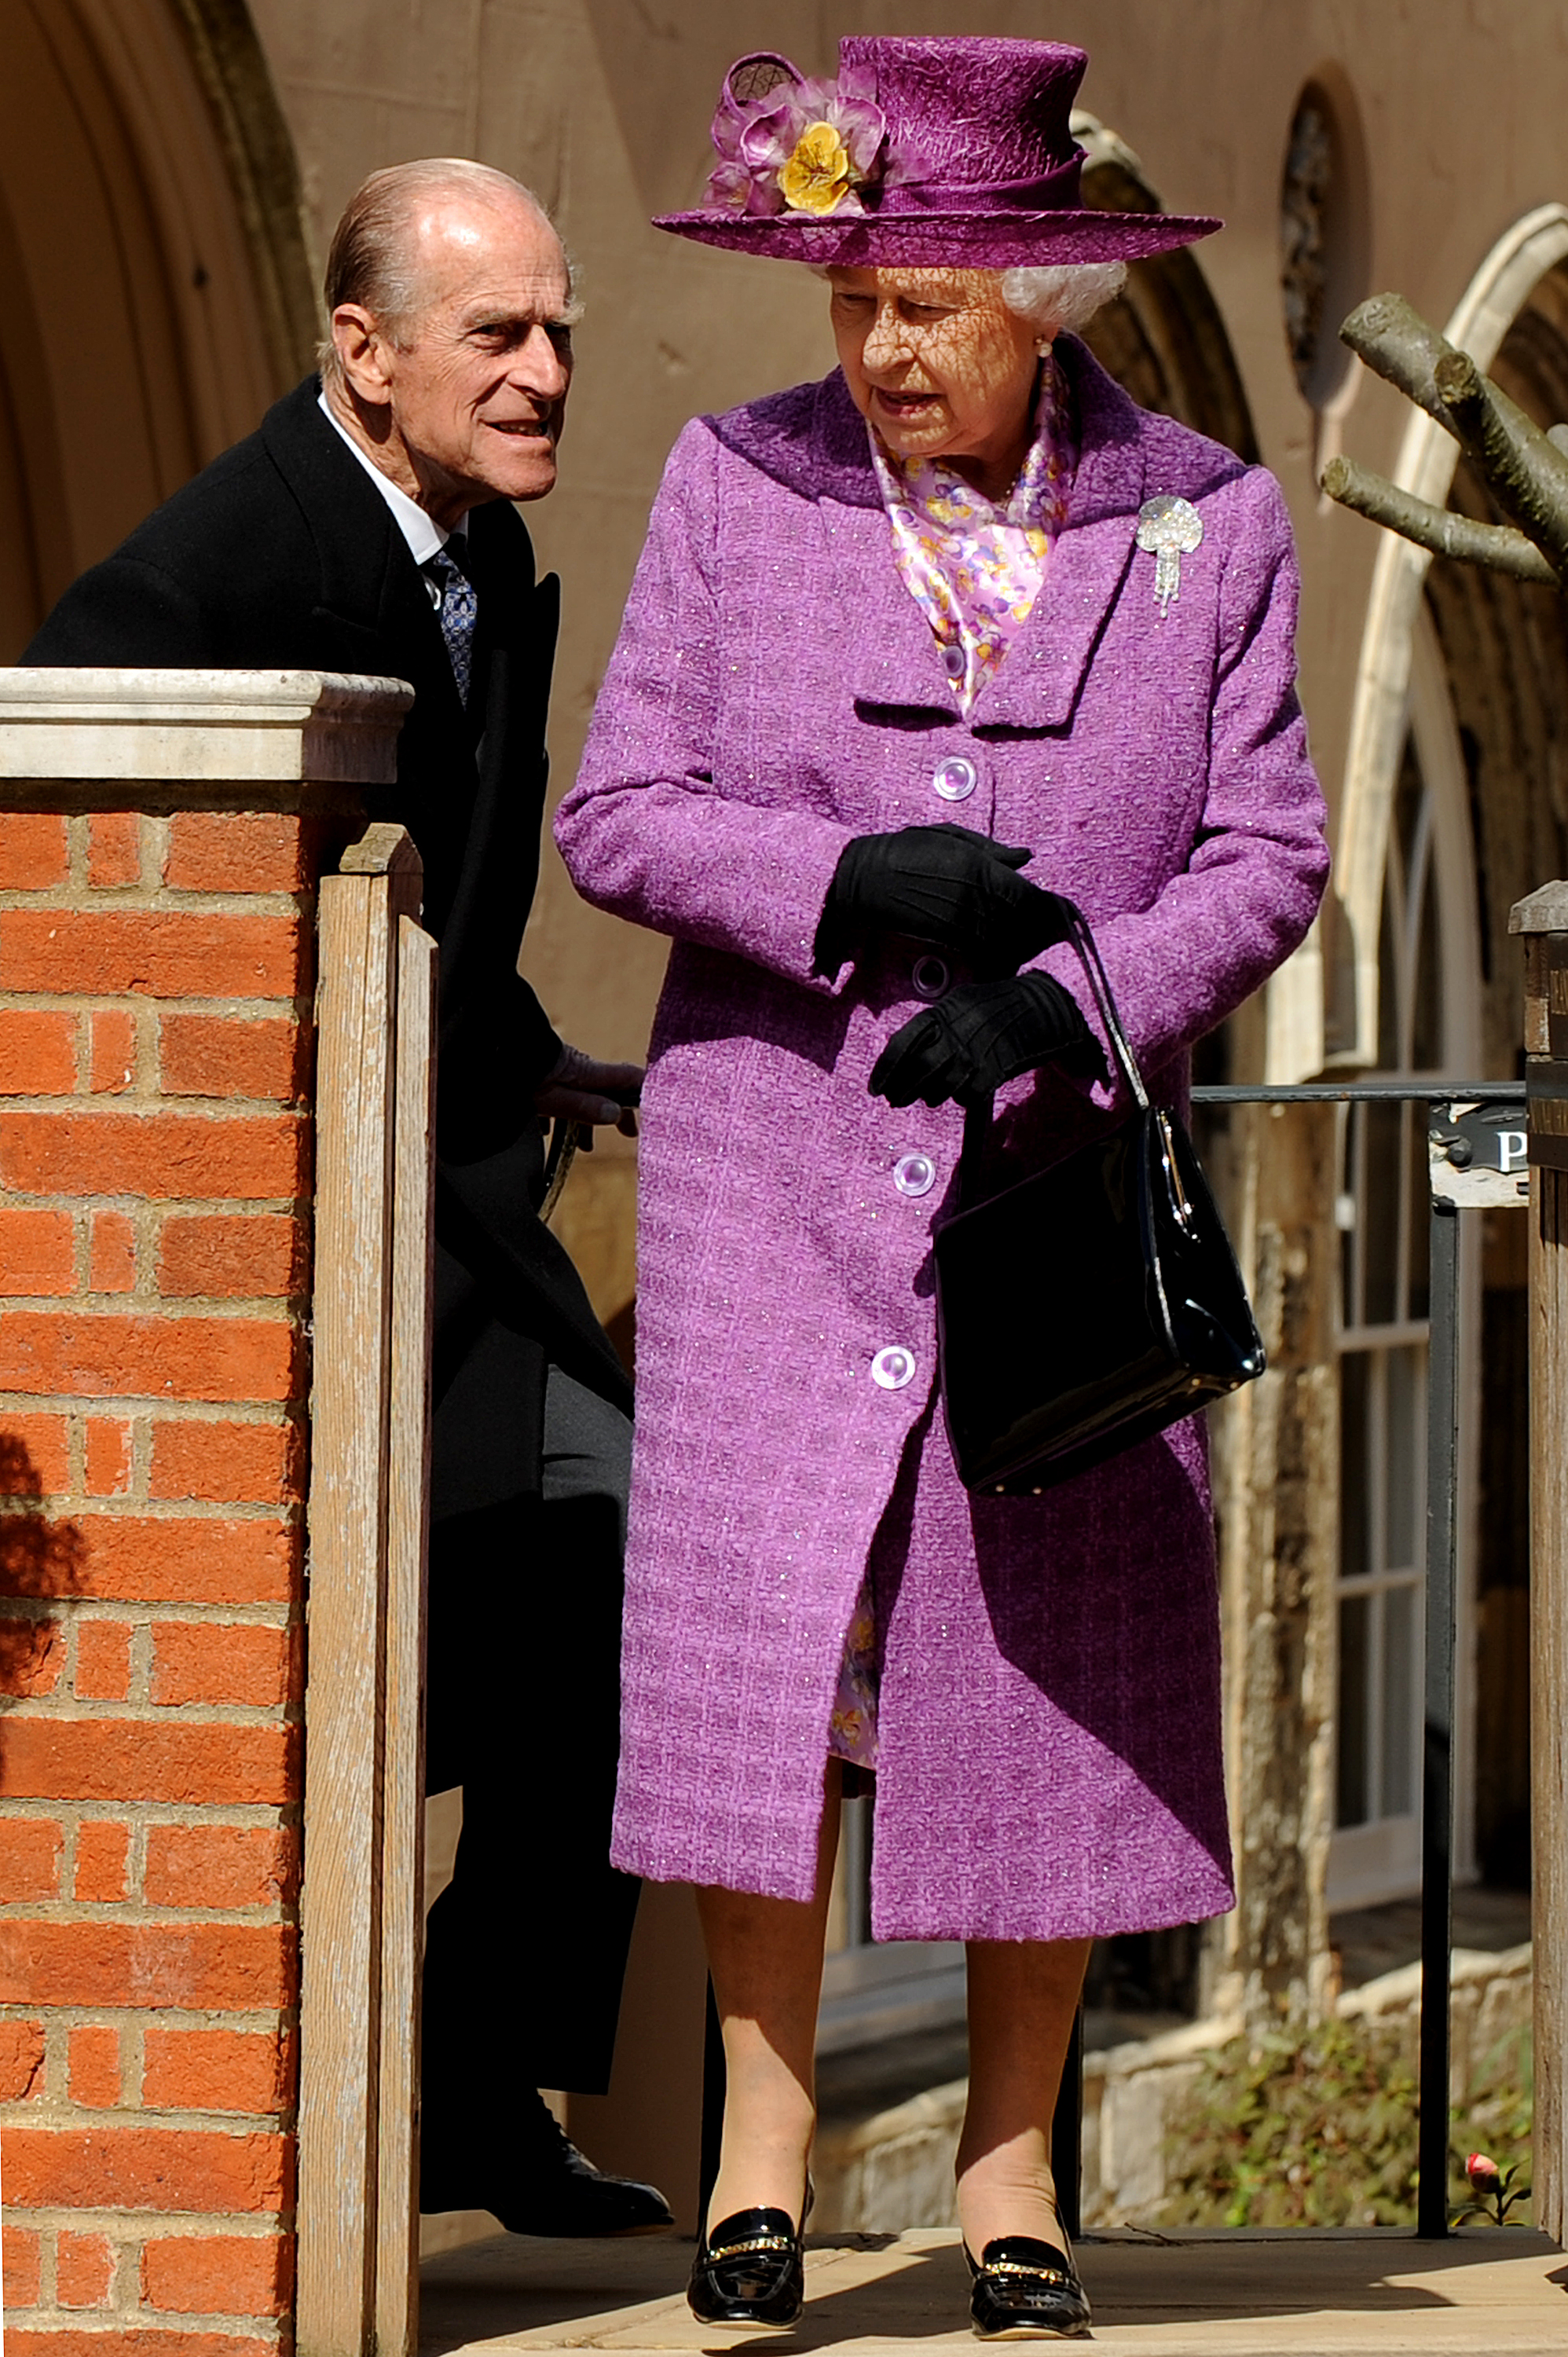 El difunto príncipe Philip y la reina Elizabeth II en un servicio religioso del Domingo de Resurrección en Windsor, Inglaterra, el 4 de abril de 2019 | Fuente: Getty Images